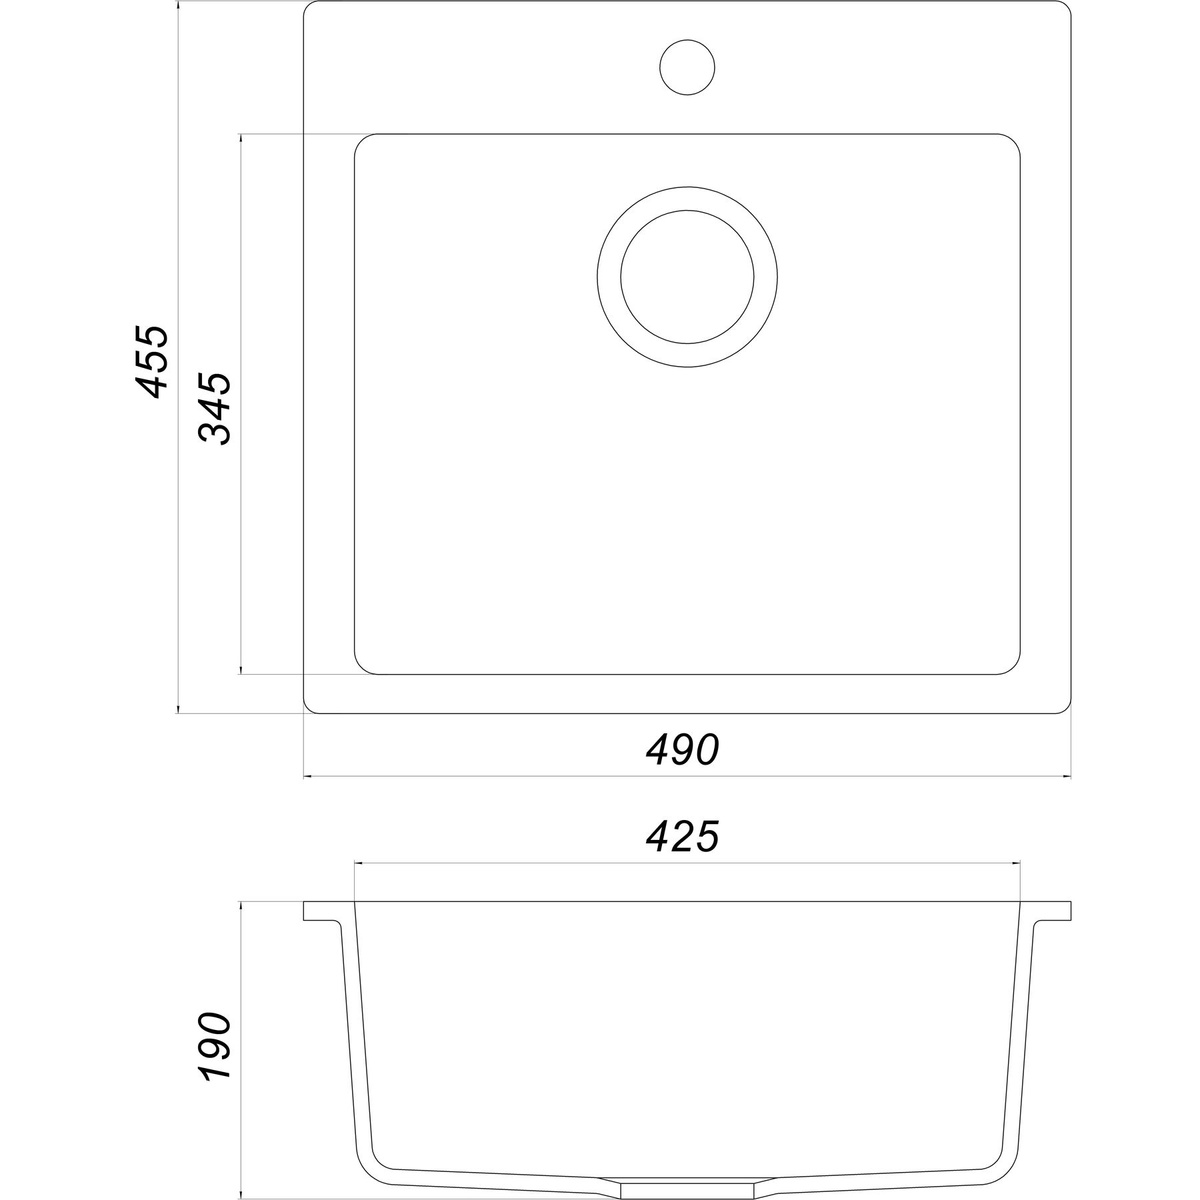 Мойка на кухню гранитная прямоугольная GLOBUS LUX AOSTA 455x490мм мокко без сифона 000023569